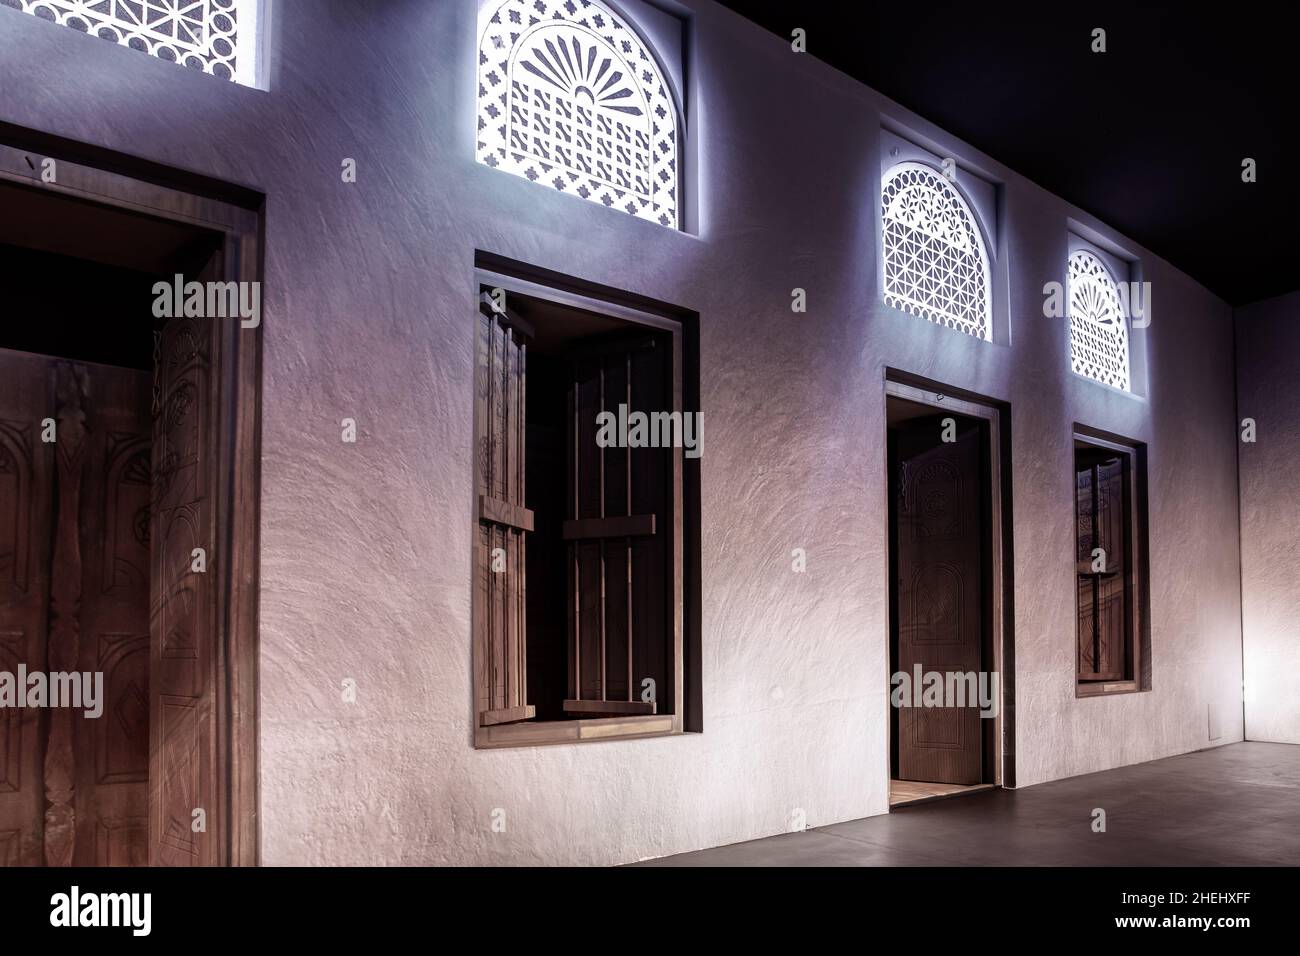 Fensterportale im arabischen Stil und geschnitzte Holztüren mit Arabesken-Ornamenten, traditionelle arabische Architektur mit moderner Beleuchtung, Dubai, VAE. Stockfoto